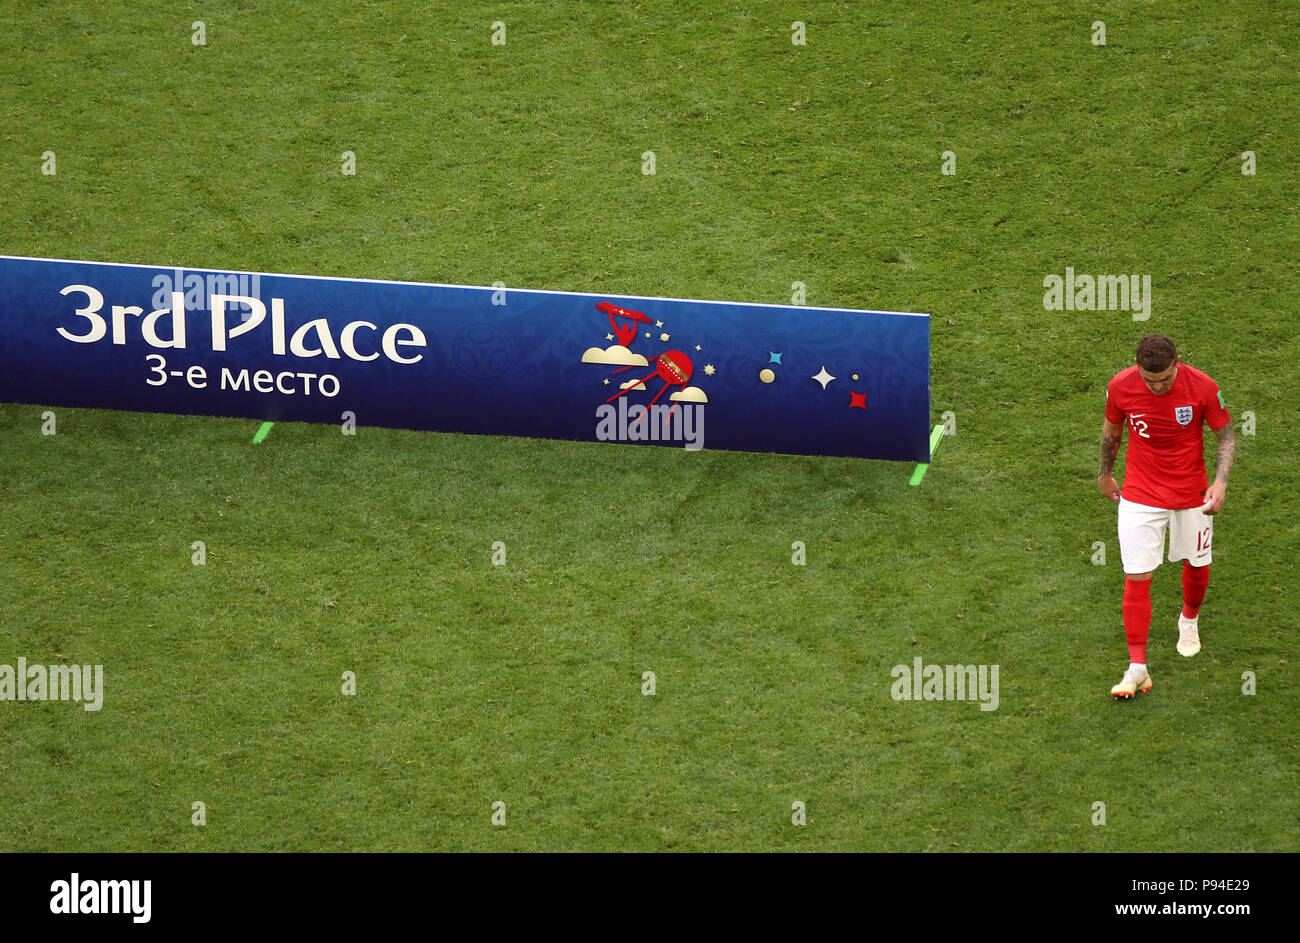 England's Kieran Trippier erscheint niedergeschlagen nach dem letzten während der Fußball-WM den dritten Platz spielen Pfeifen-off Spiel in Sankt Petersburg Stadion. Stockfoto